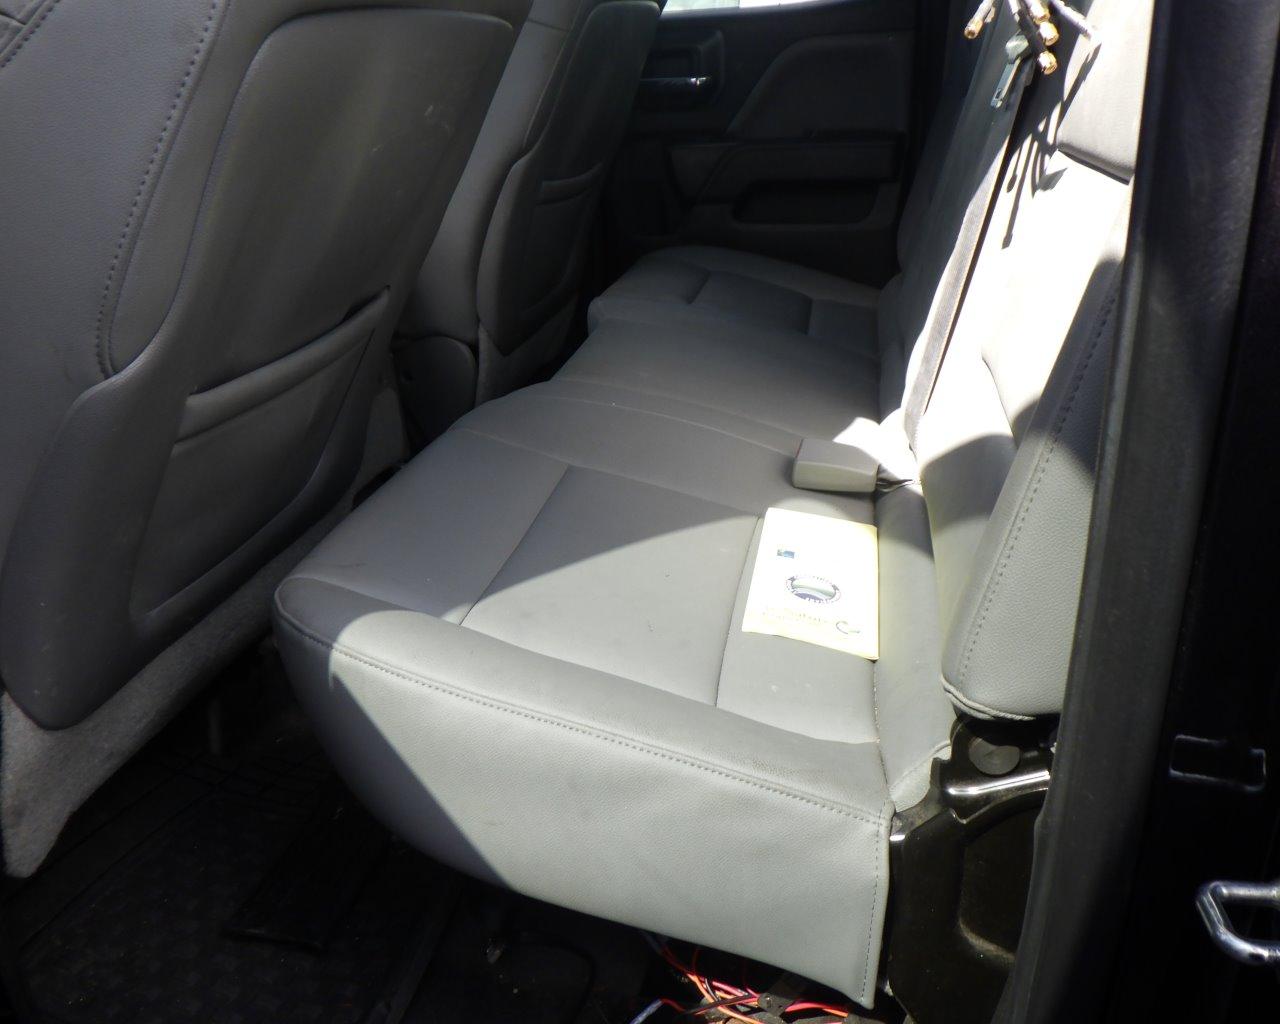 2014 Chevrolet Silverado Ext Cab   w/Tool Box   4x4 s/n:342006